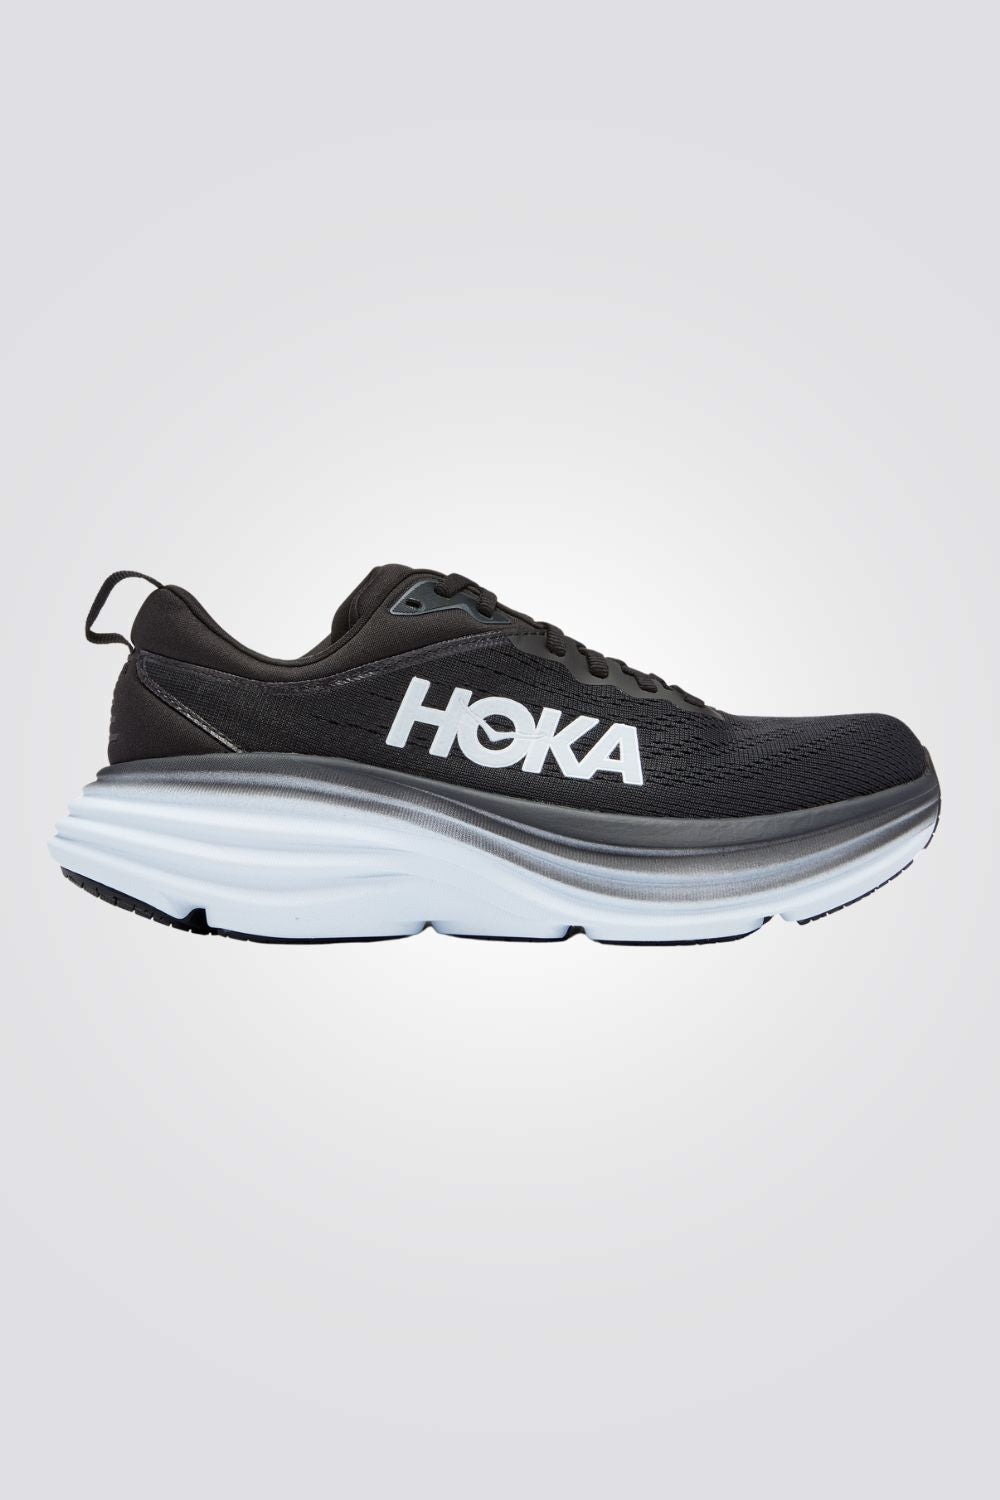 נעליים מבית המותג HOKA בעלות מדרס פנימי רך במיוחד שעוטף את הרגל בנוחות בלתי מתפשרת. סולייה חיצונית עמידה בתוספת בולם זעזועים, שמספקת אחיזה מלאה בקרקע.